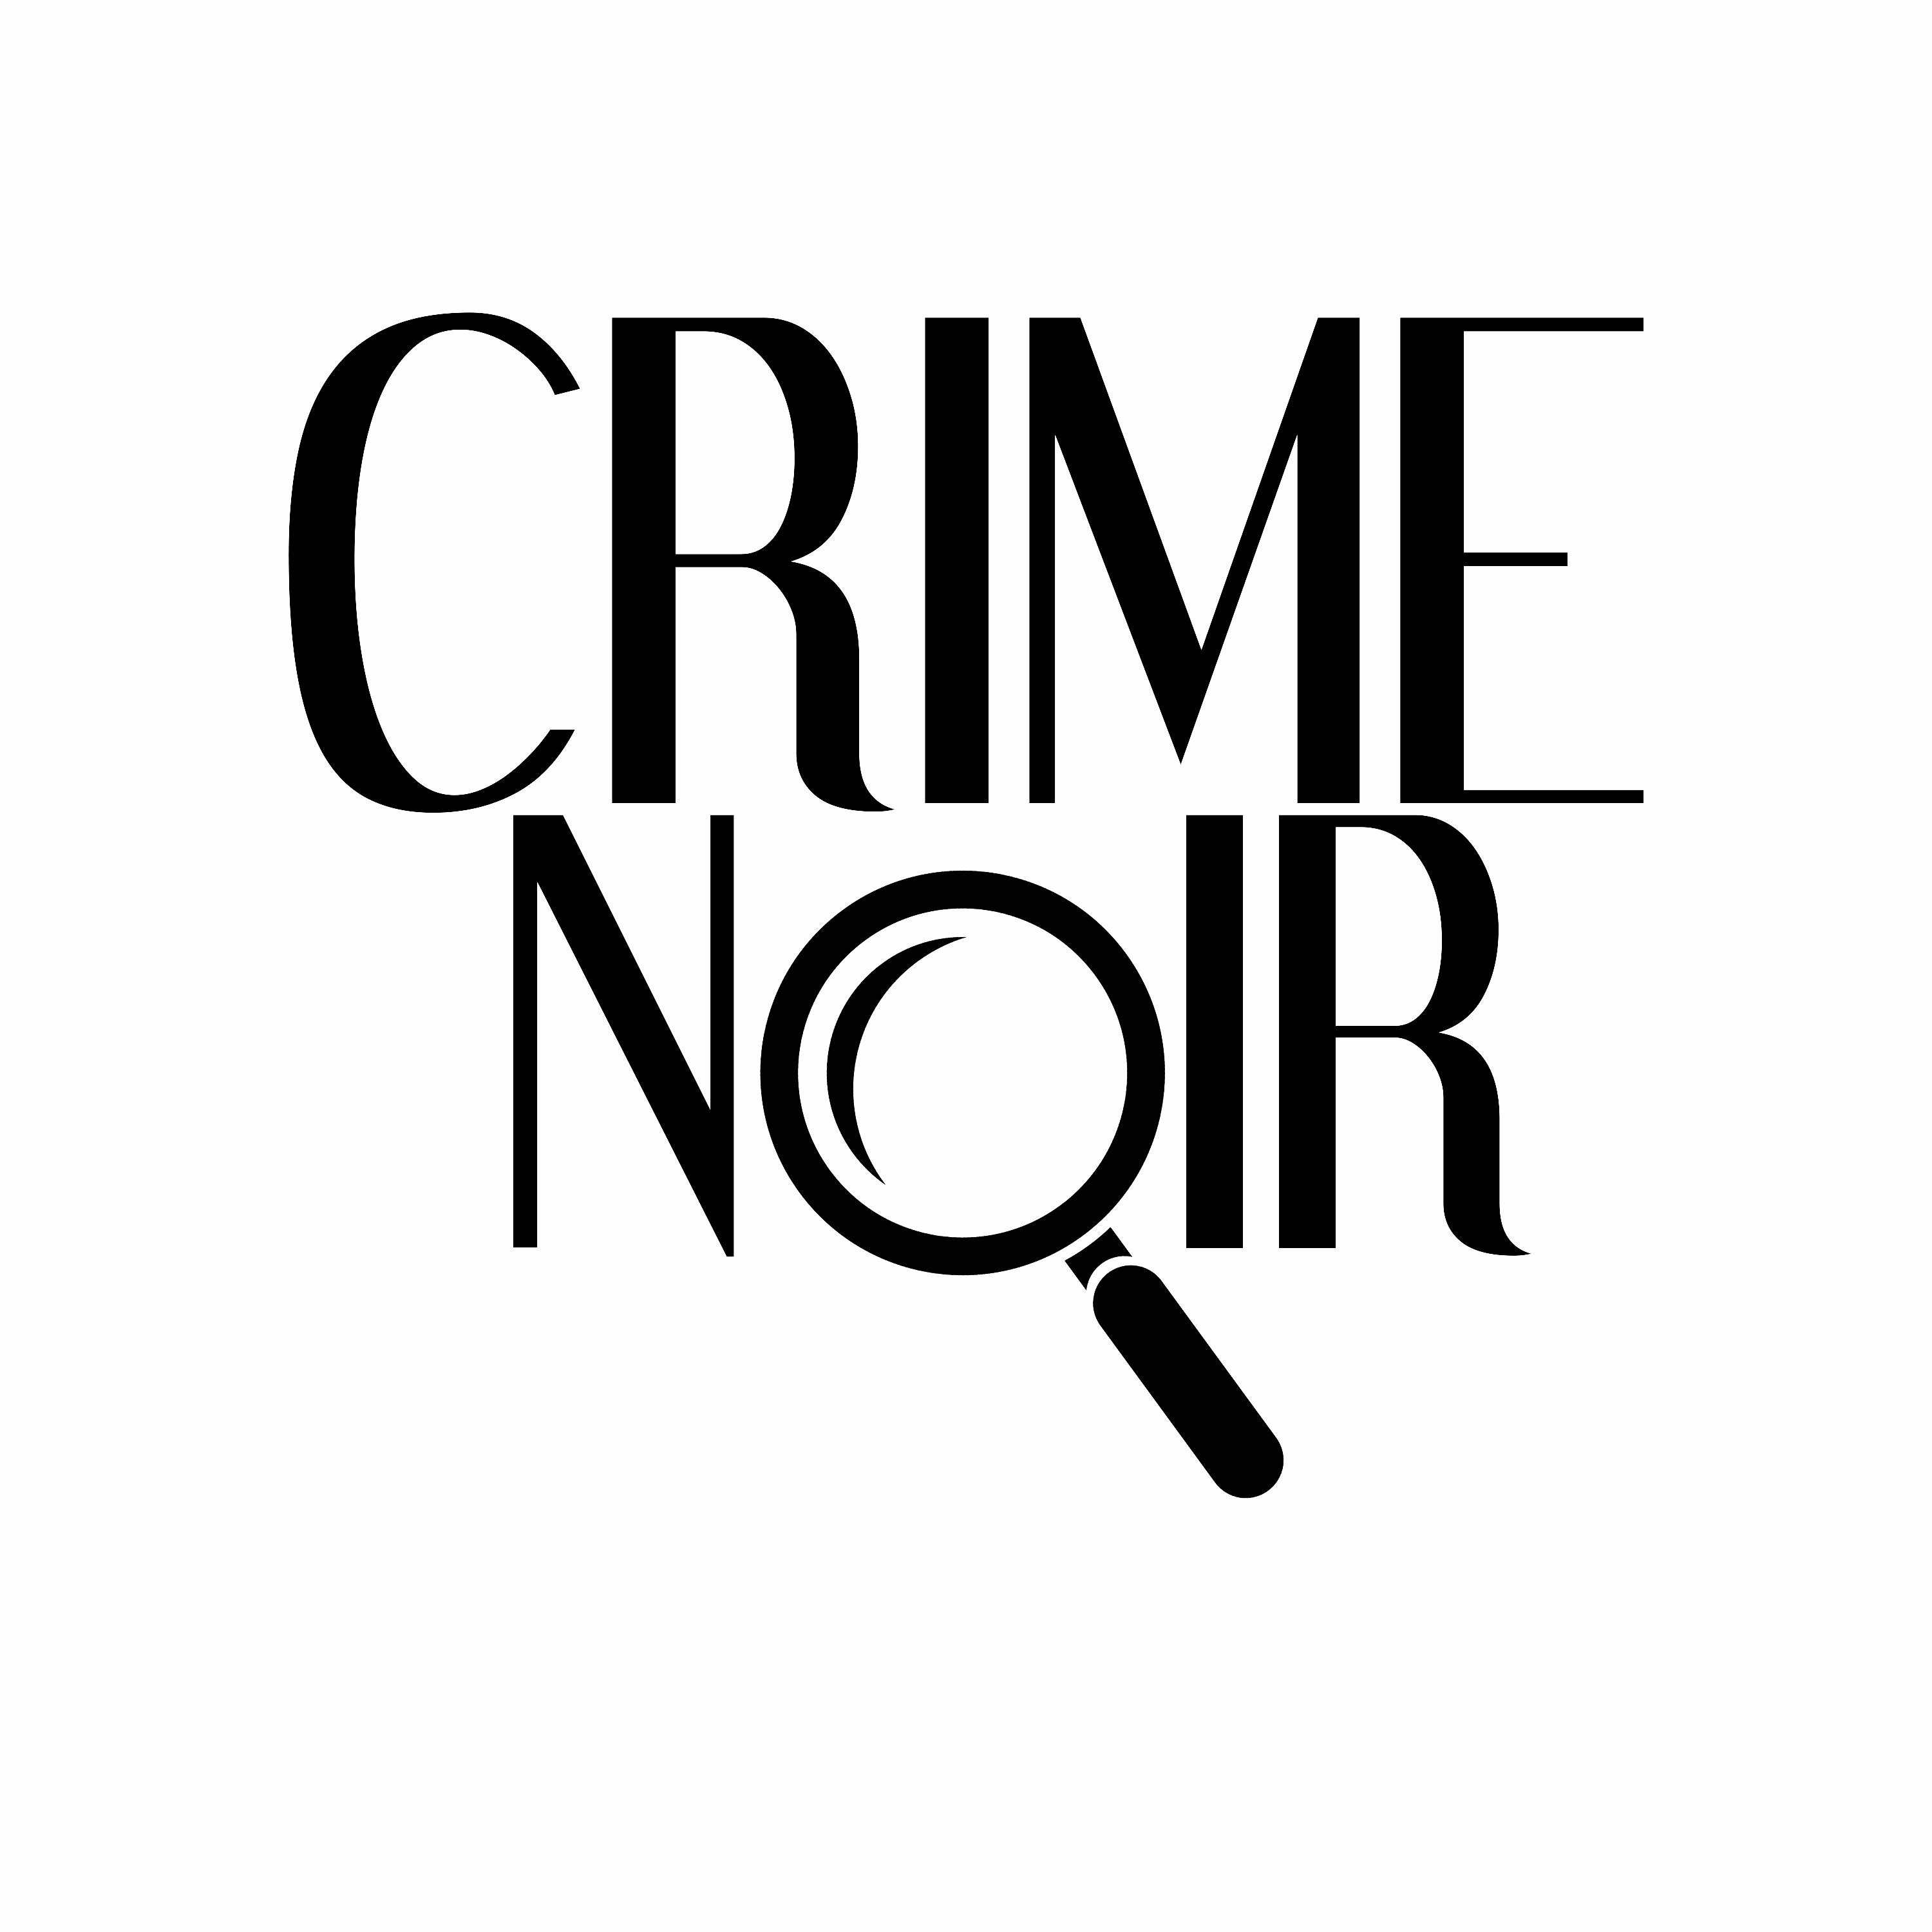 BONUS - The Murder of Tahjmere Hopkins hosted by Modern Murders ft Crime Noir